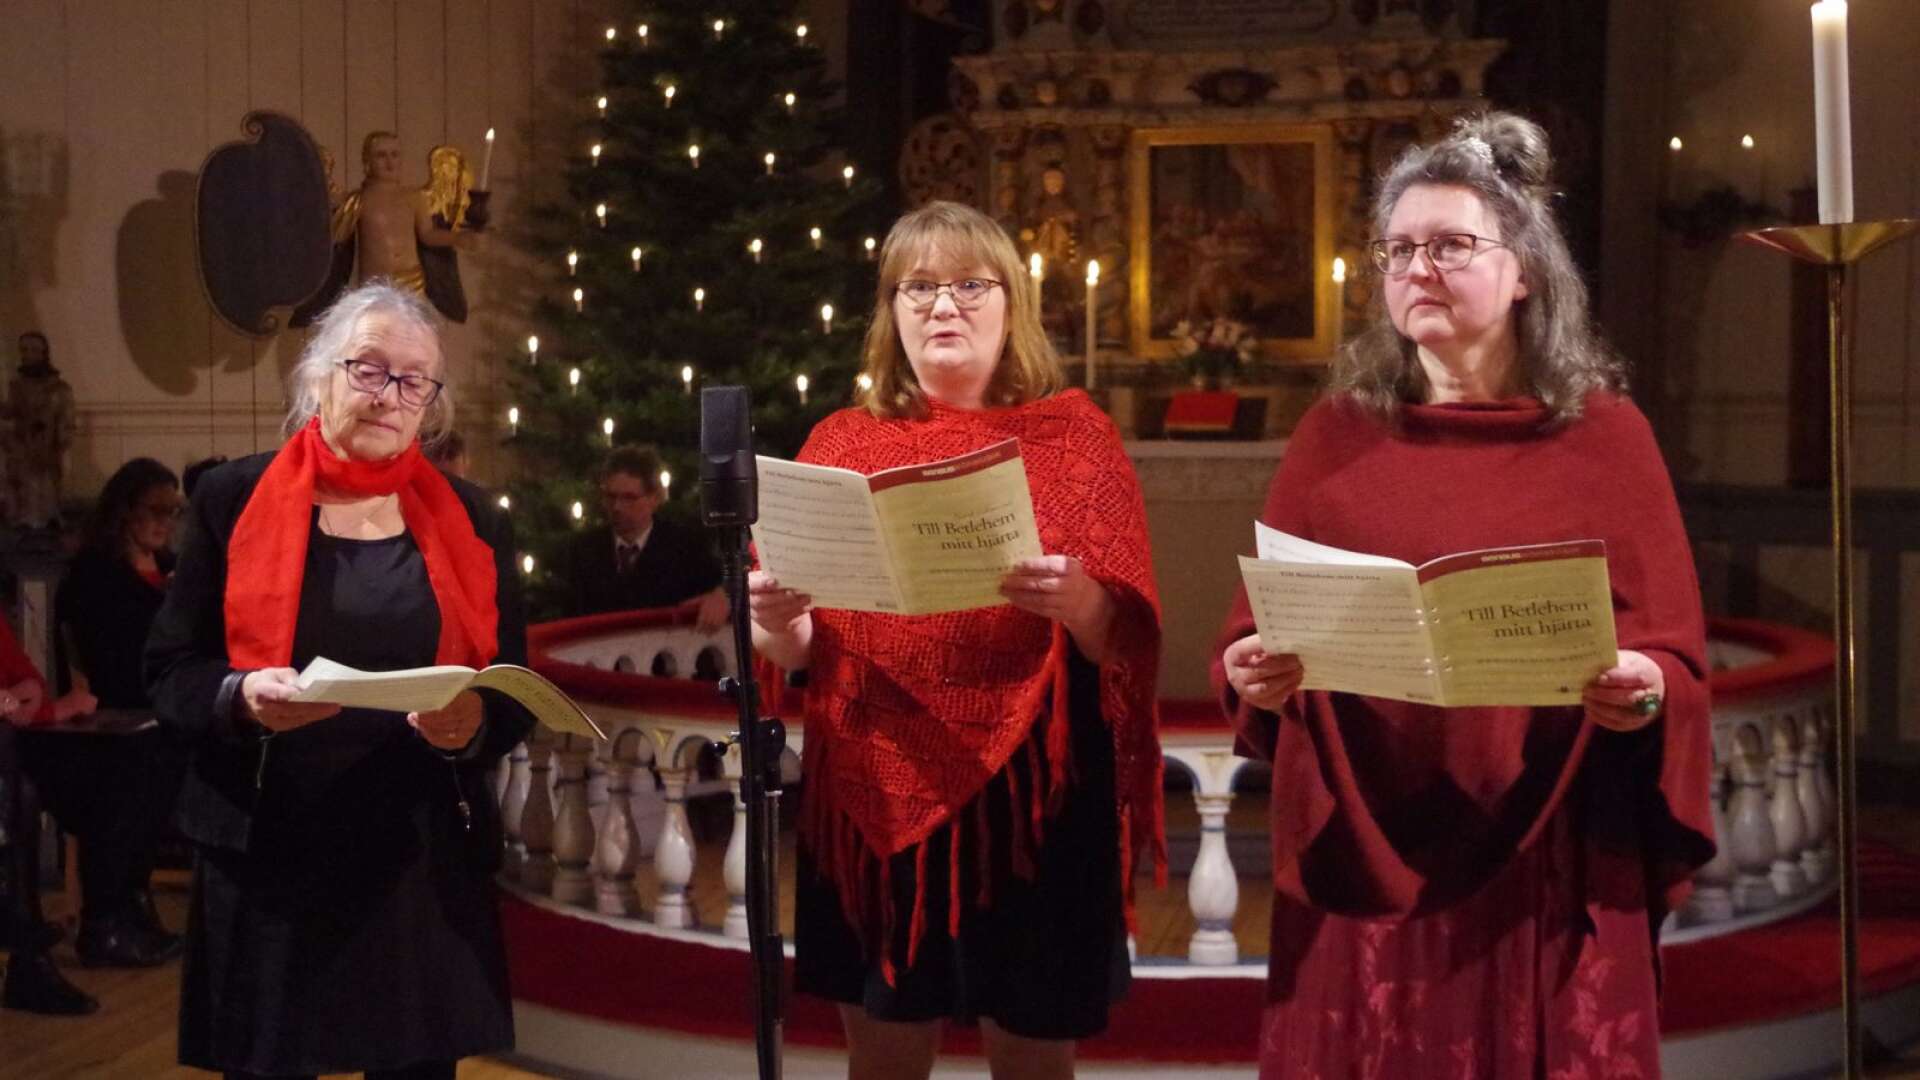 Birgit Bergendal, Sofia Loftman och Karin Olsson sjöng vackert ”Till Betlehem mitt hjärta”.